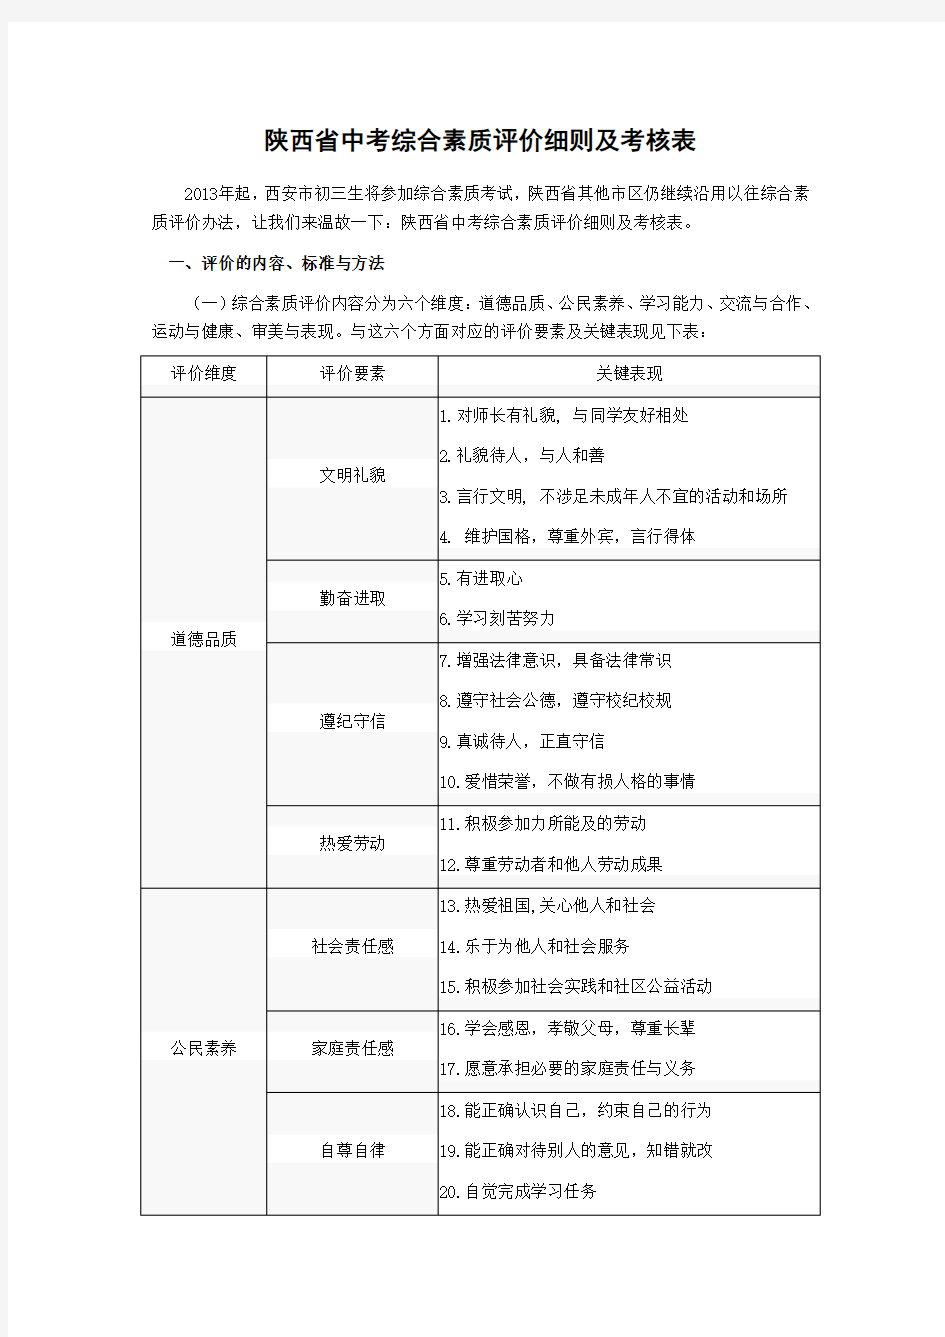 陕西省中考综合素质评价细则及考核表